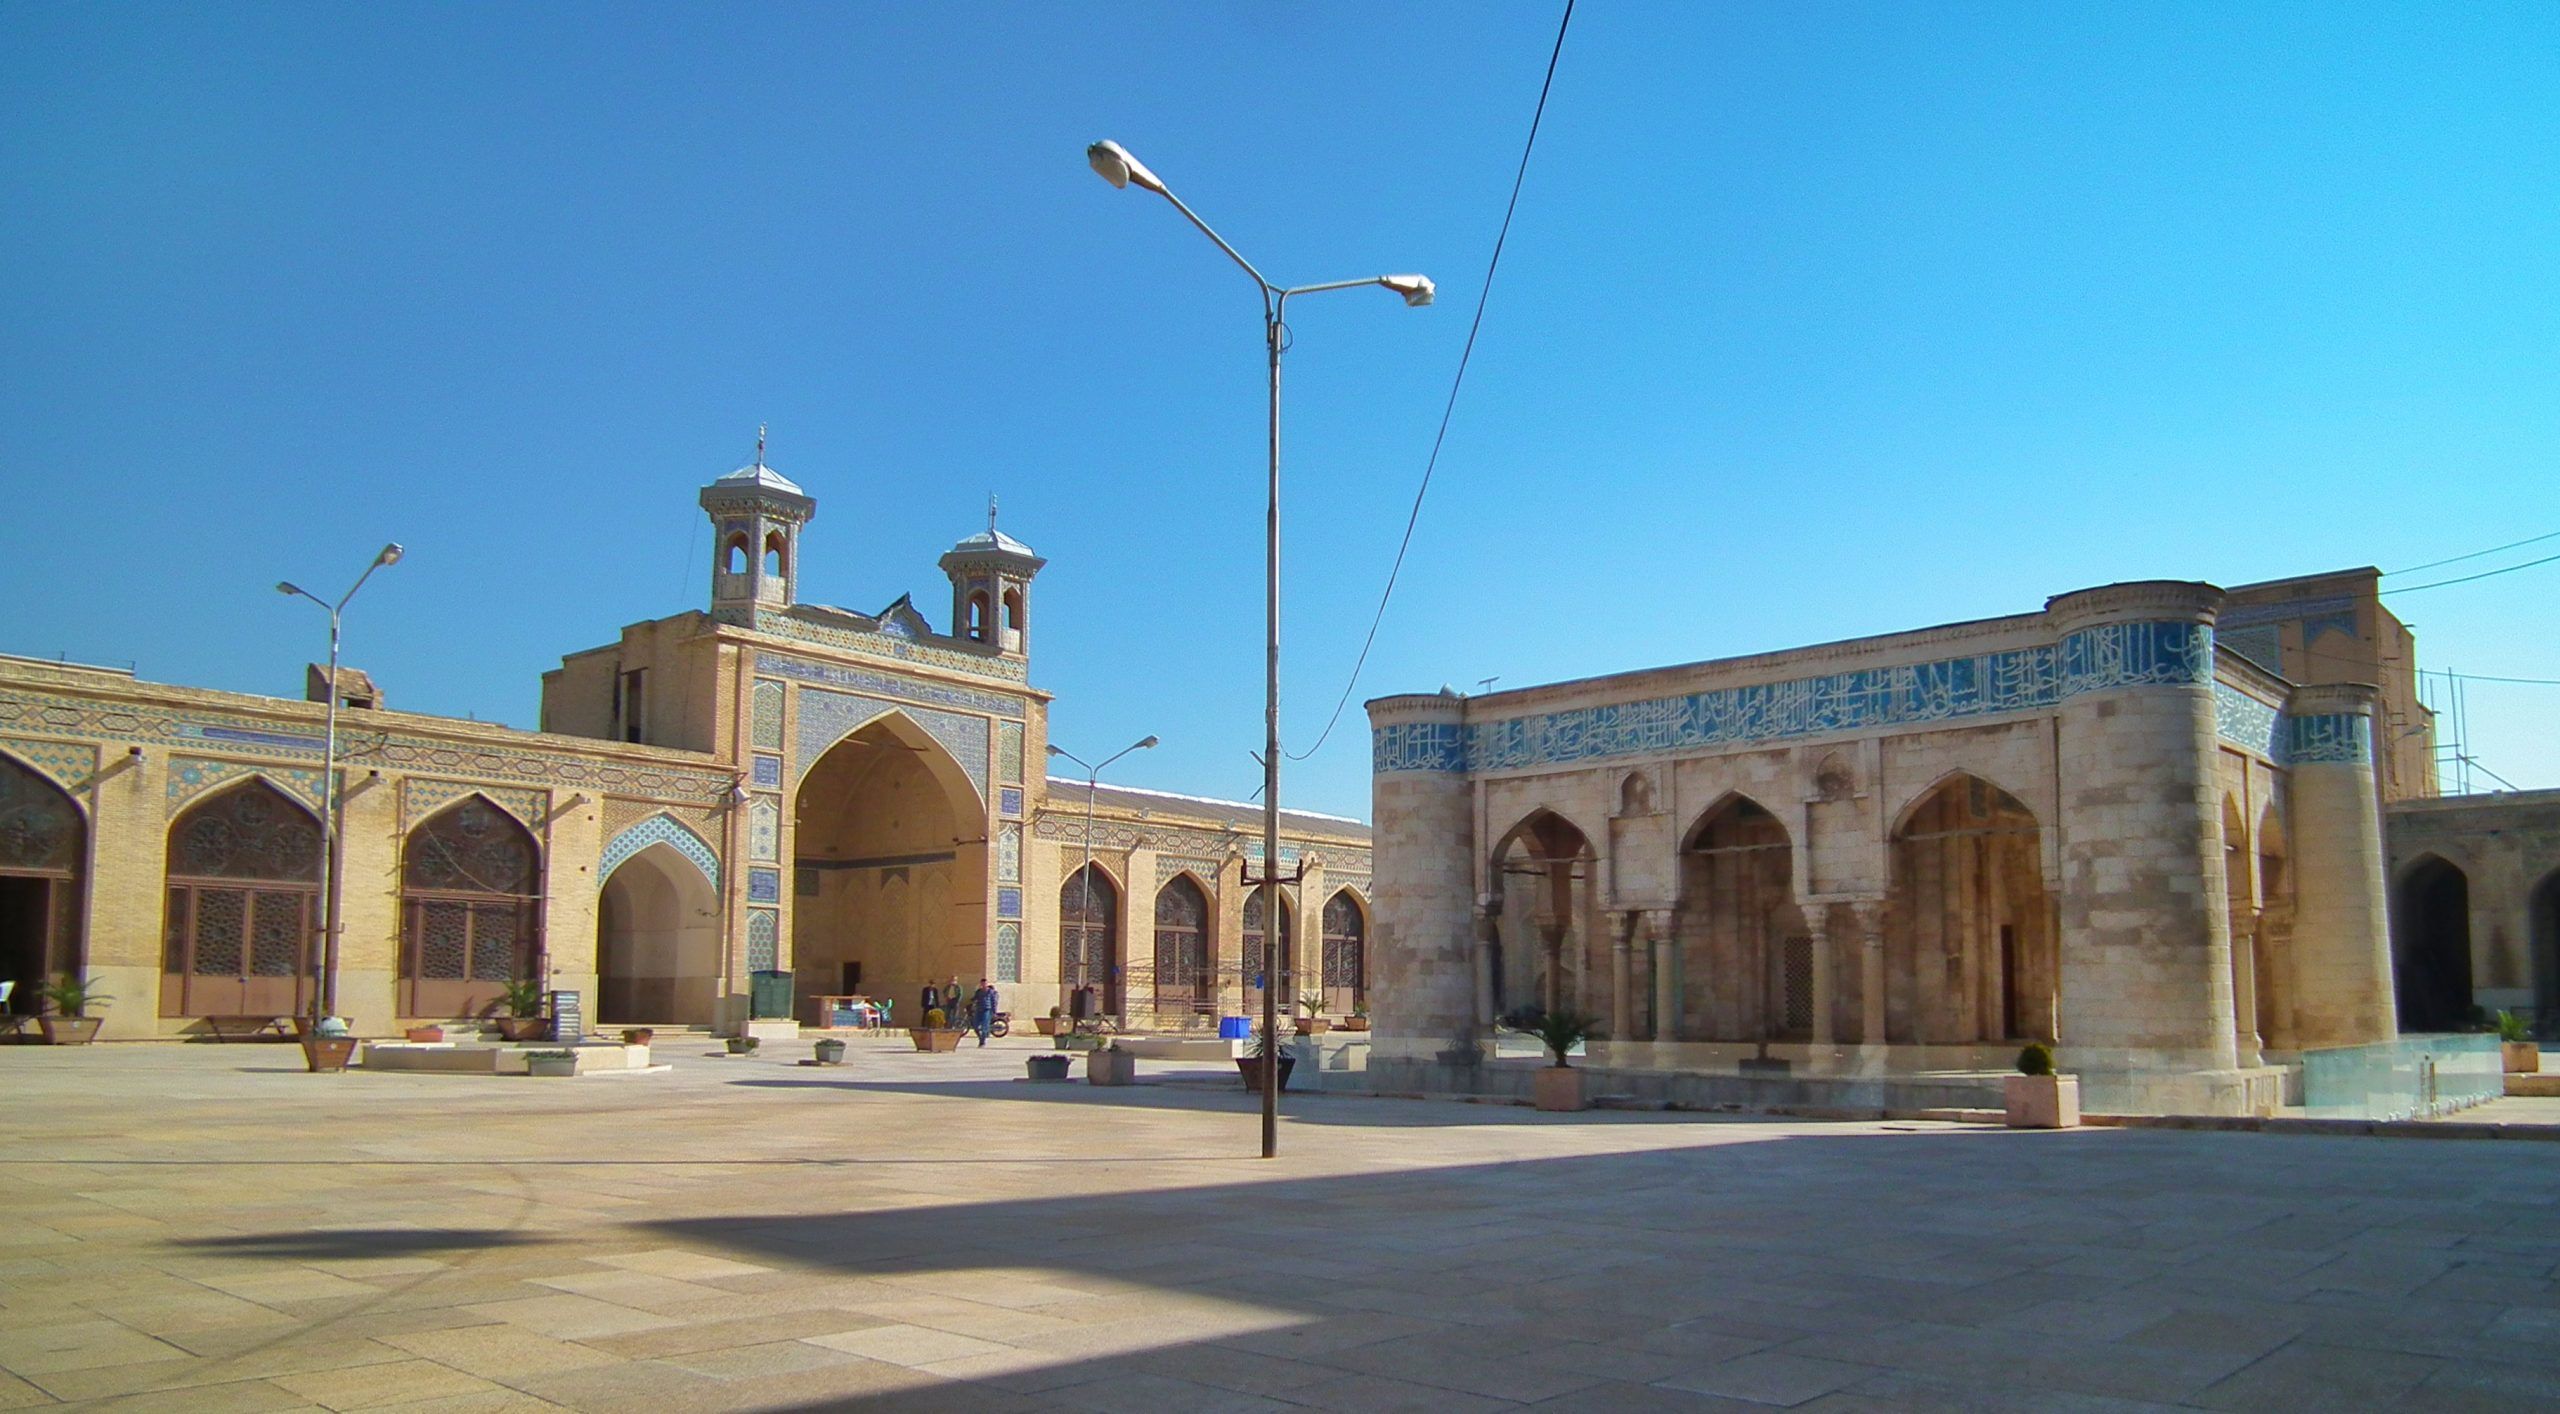 Atigh Jame Mosque